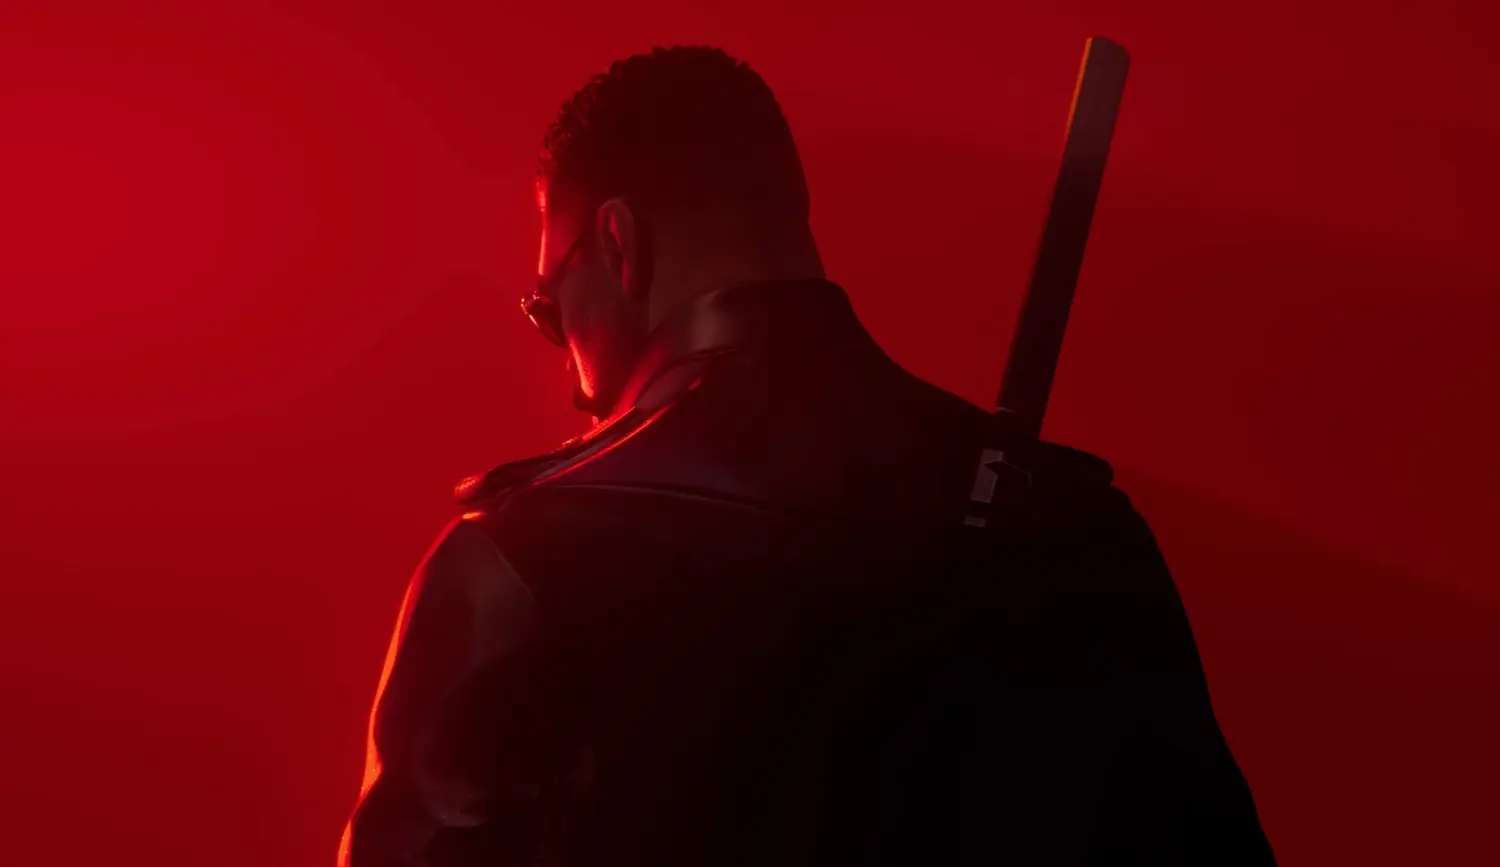 Marvel's Blade: Trailer do jogo é lançado no The Game Awards - O Herói